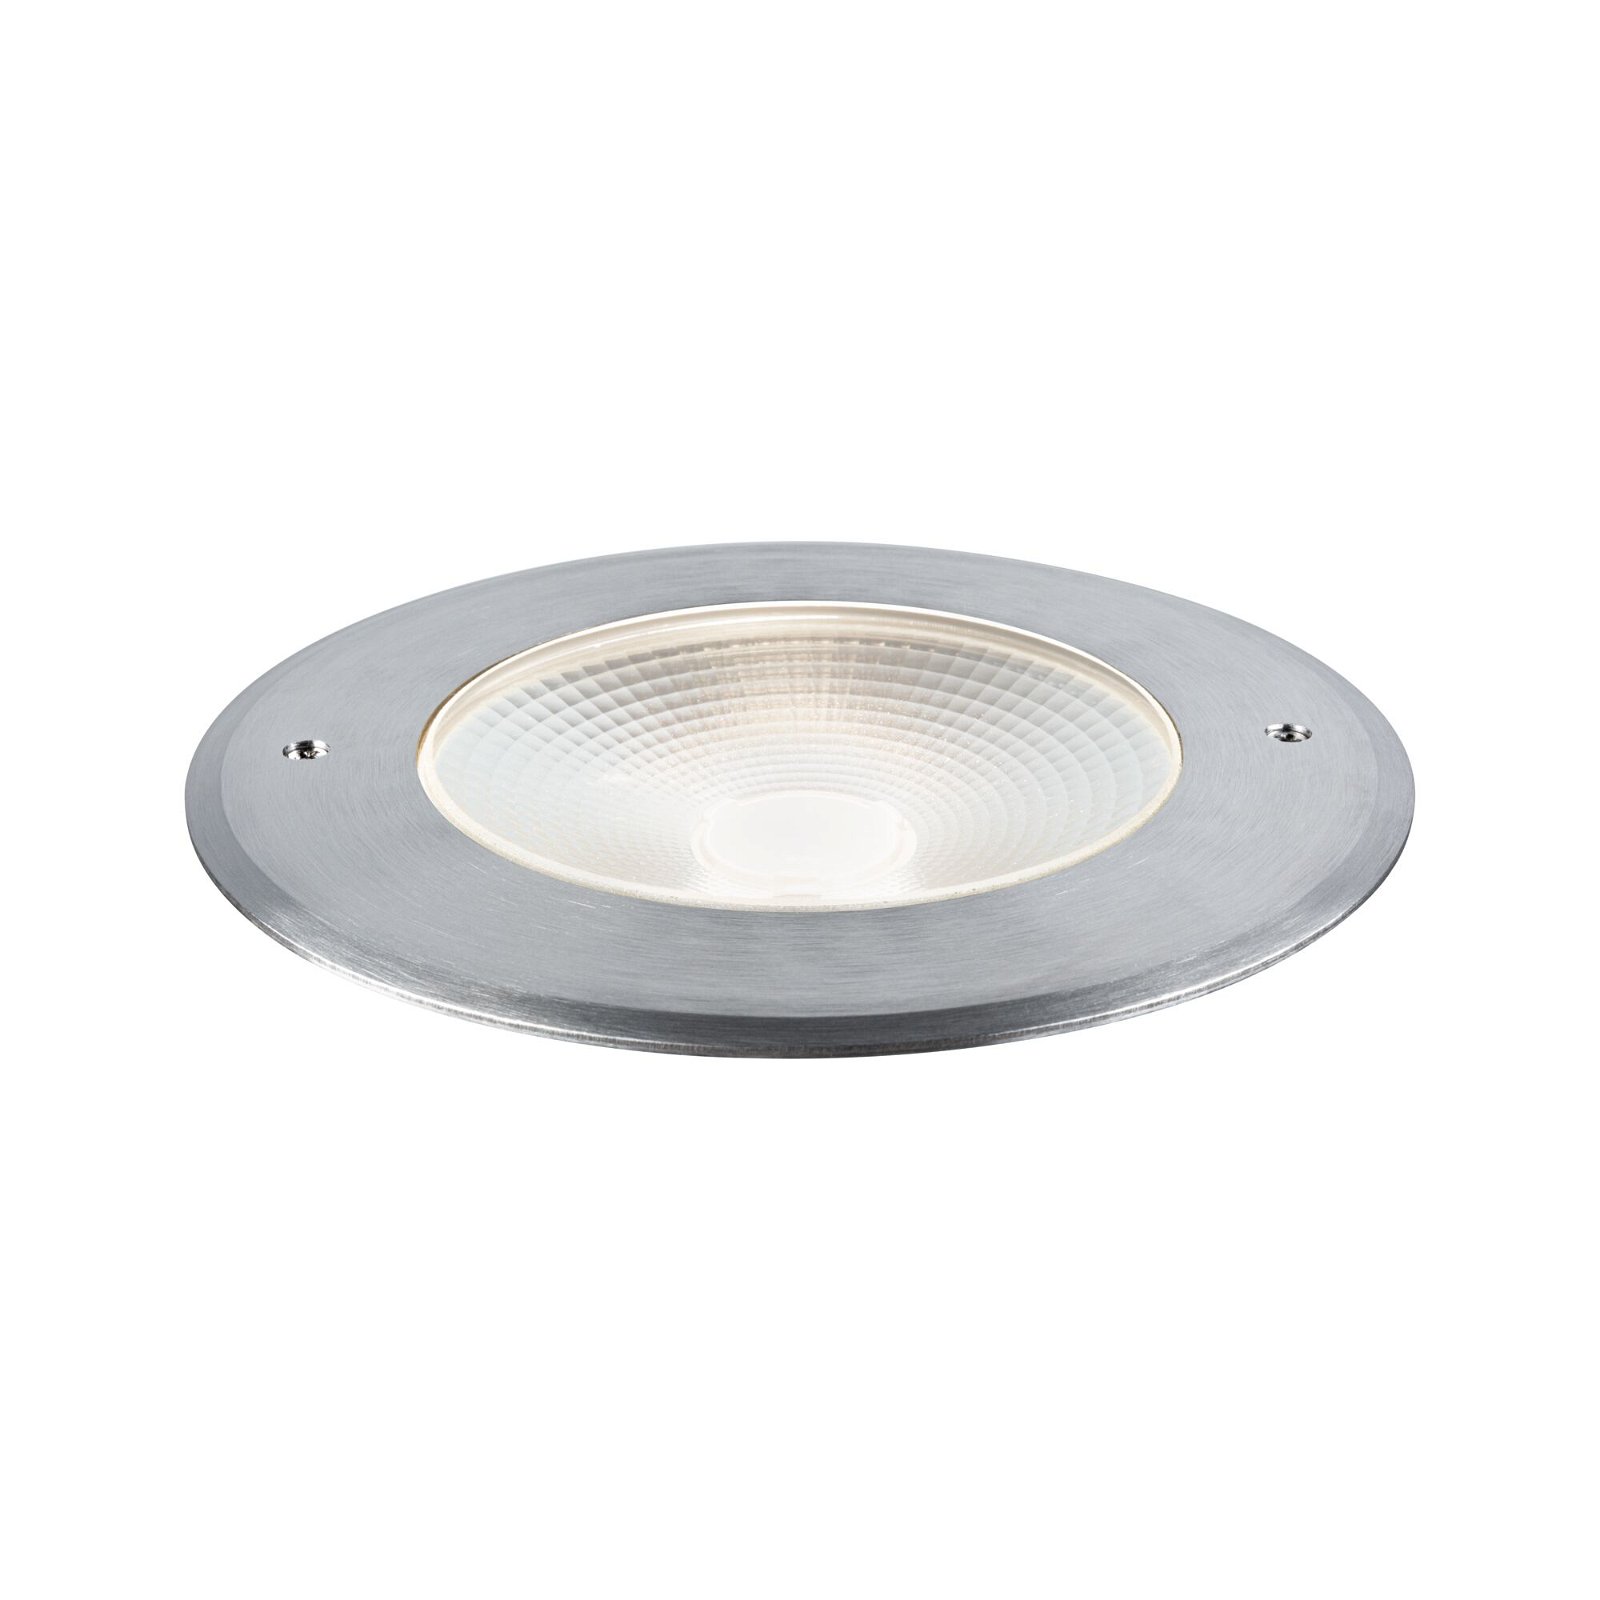 LED Recessed floor luminaire Vanea seawater resistant IP67 round 160mm 3000K 15,5W 800lm 230V 65° Aluminium Aluminium